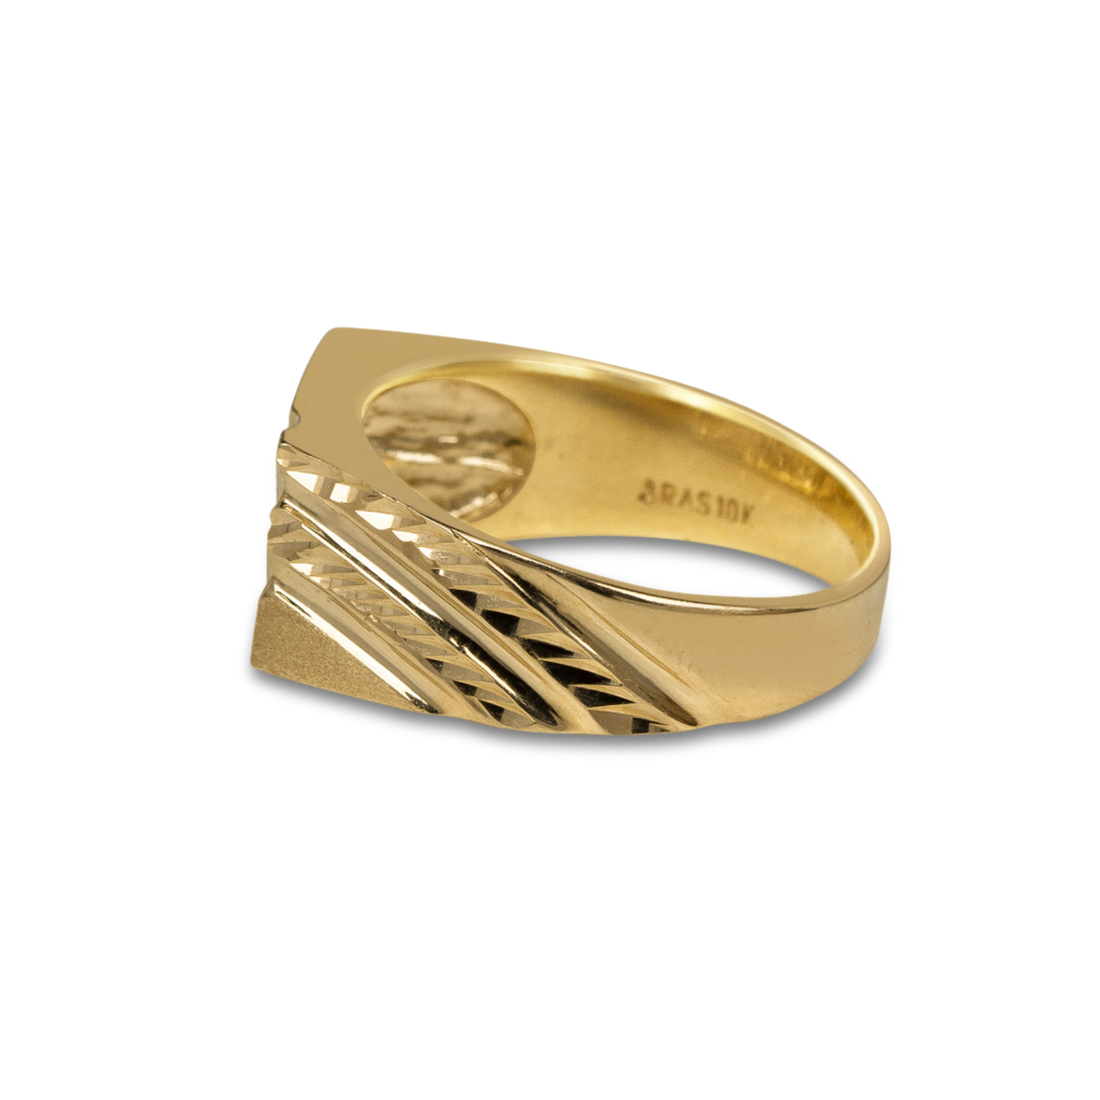 solid gold man ring, man 14k gold signet, man gold pinky ring 14k